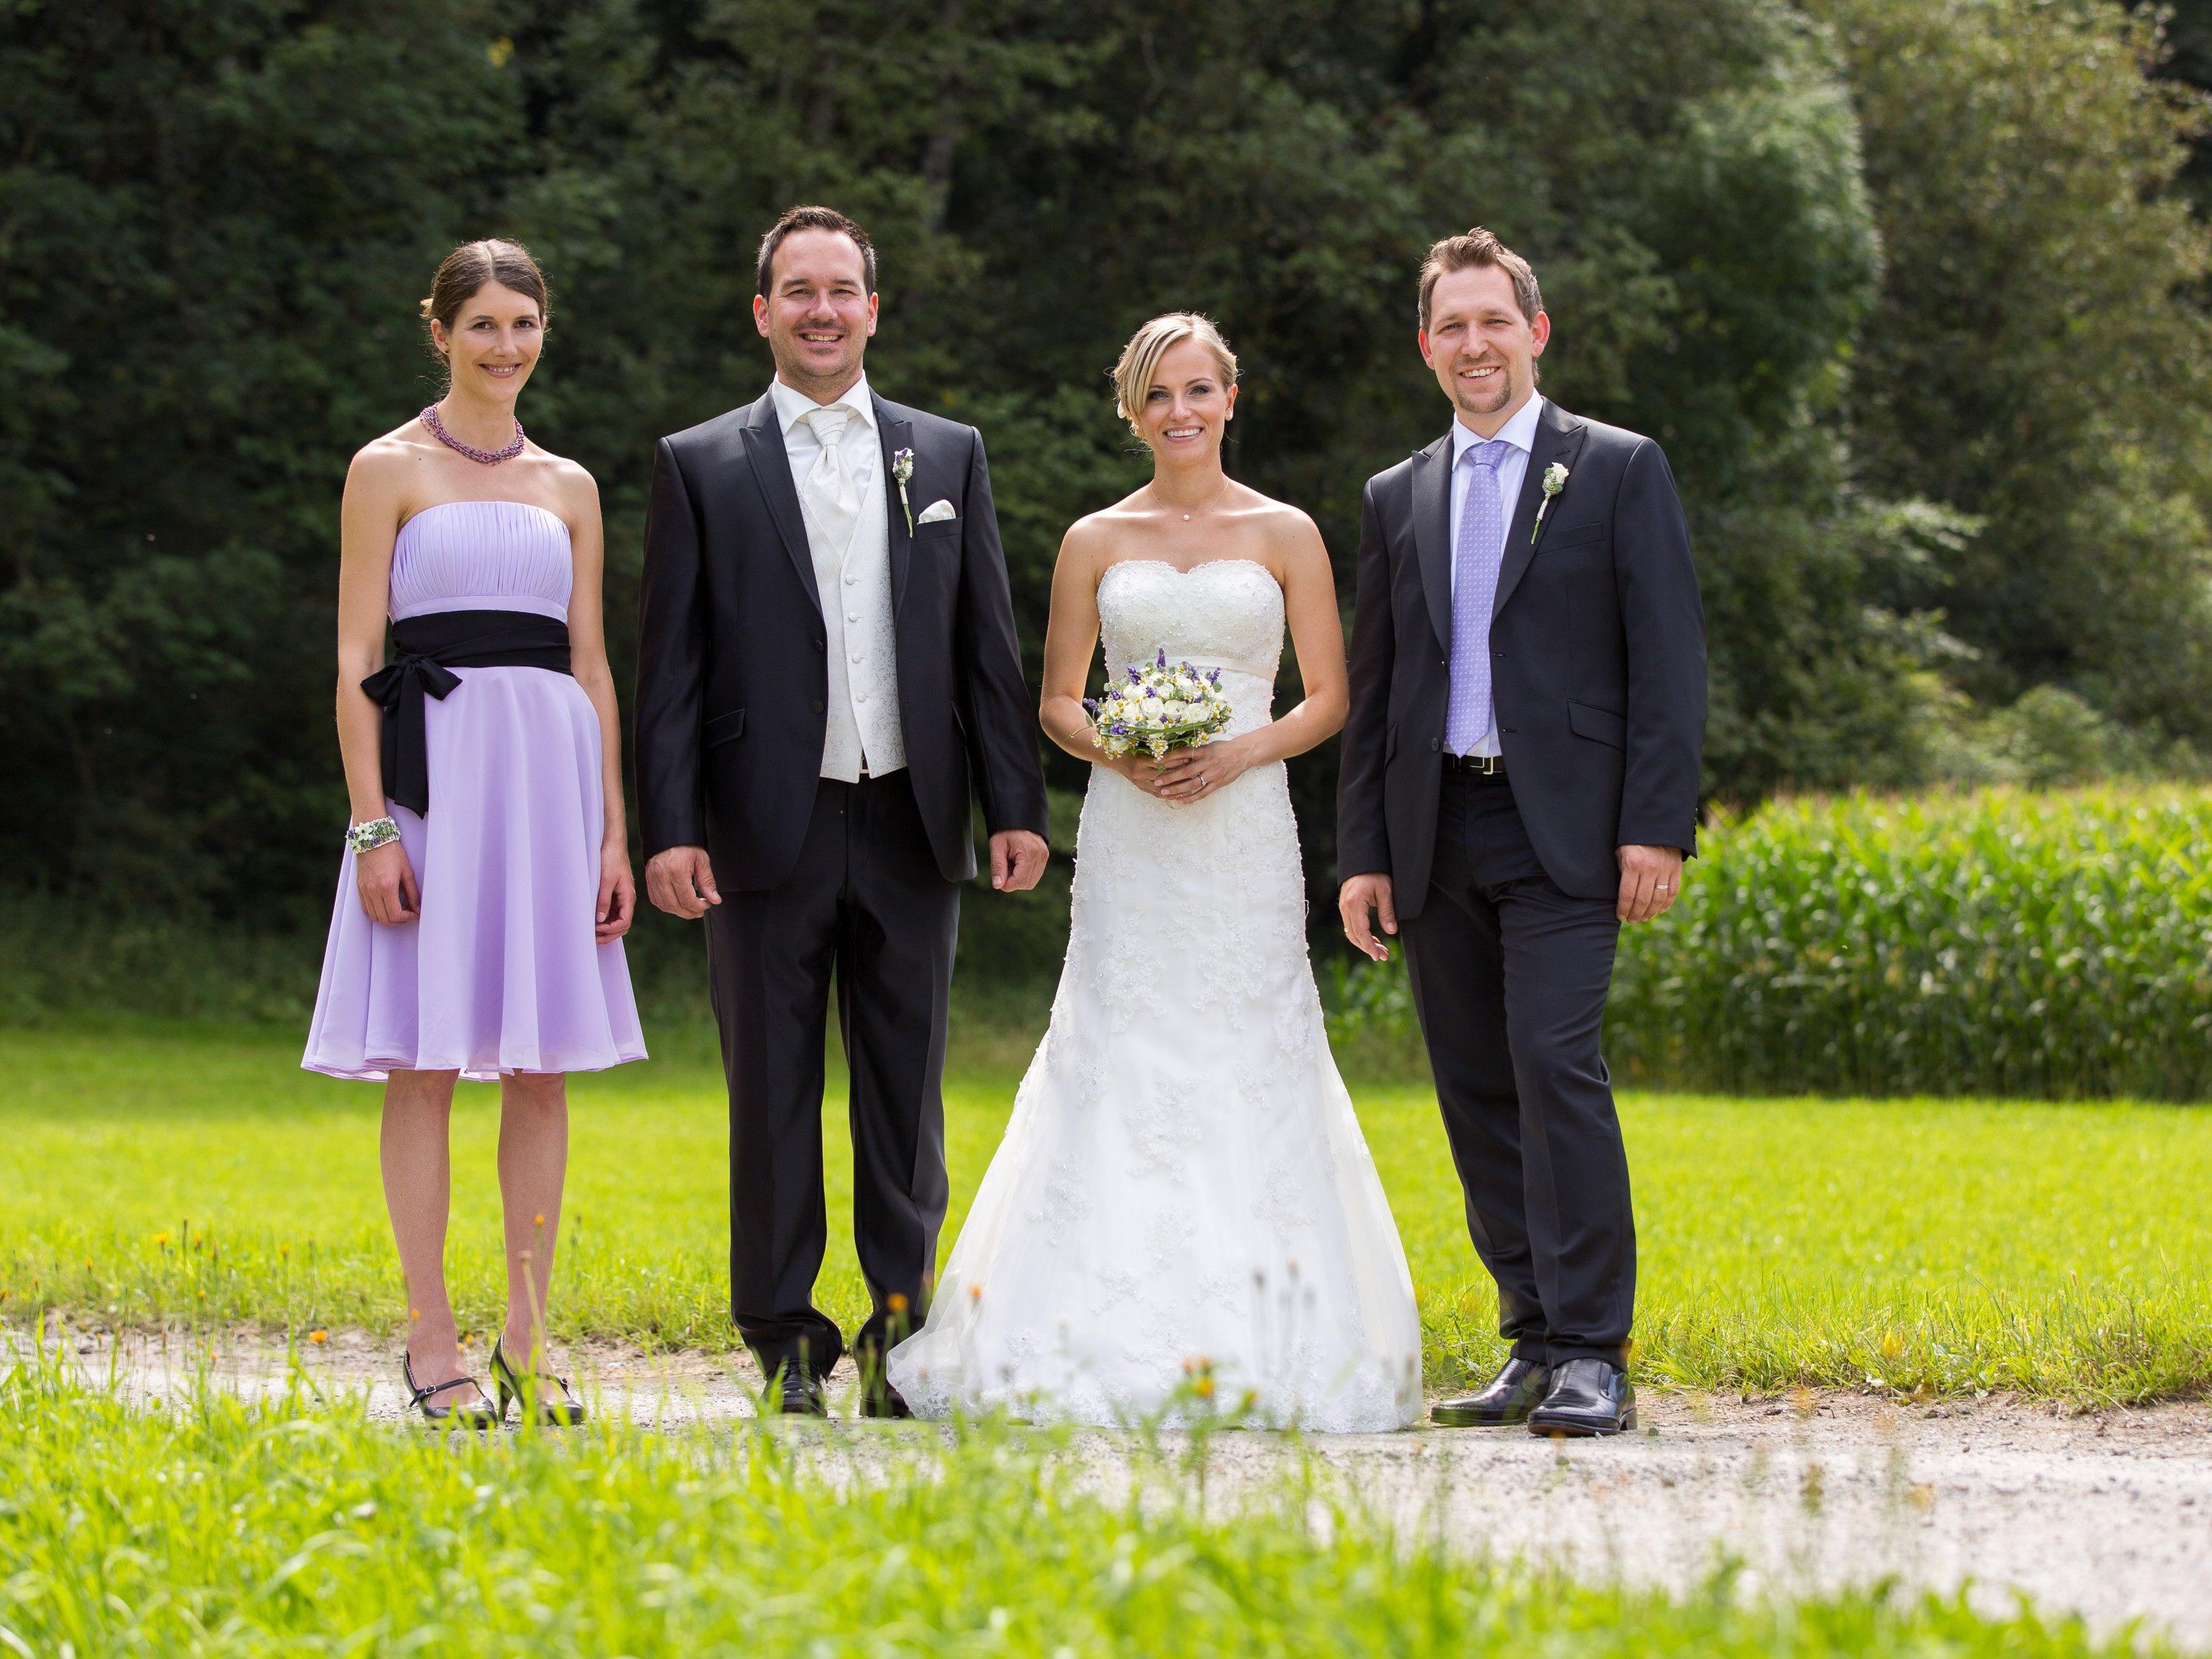 Nadja Kreyer und Matthias Mungenast haben geheiratet.